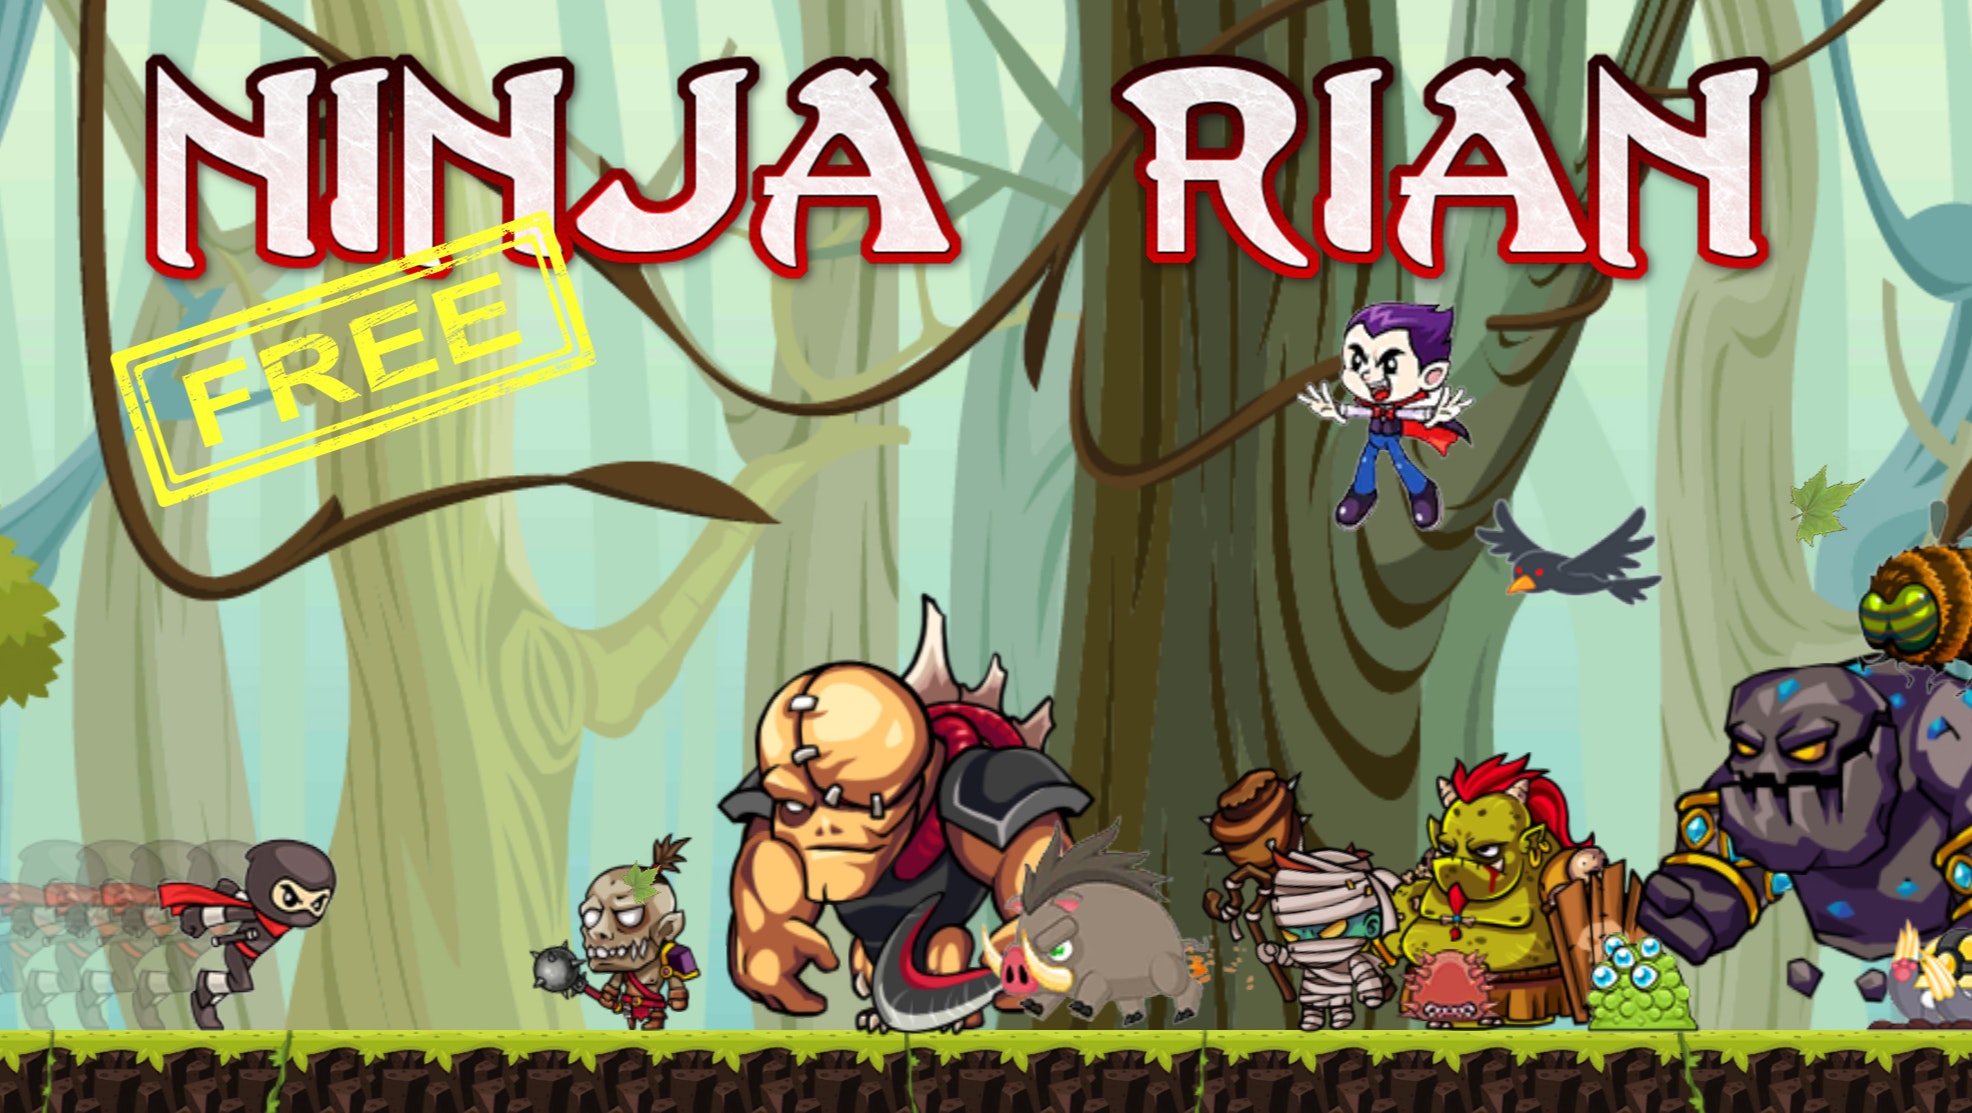 Ninja Classic: New Ninja Browser Game Now Available